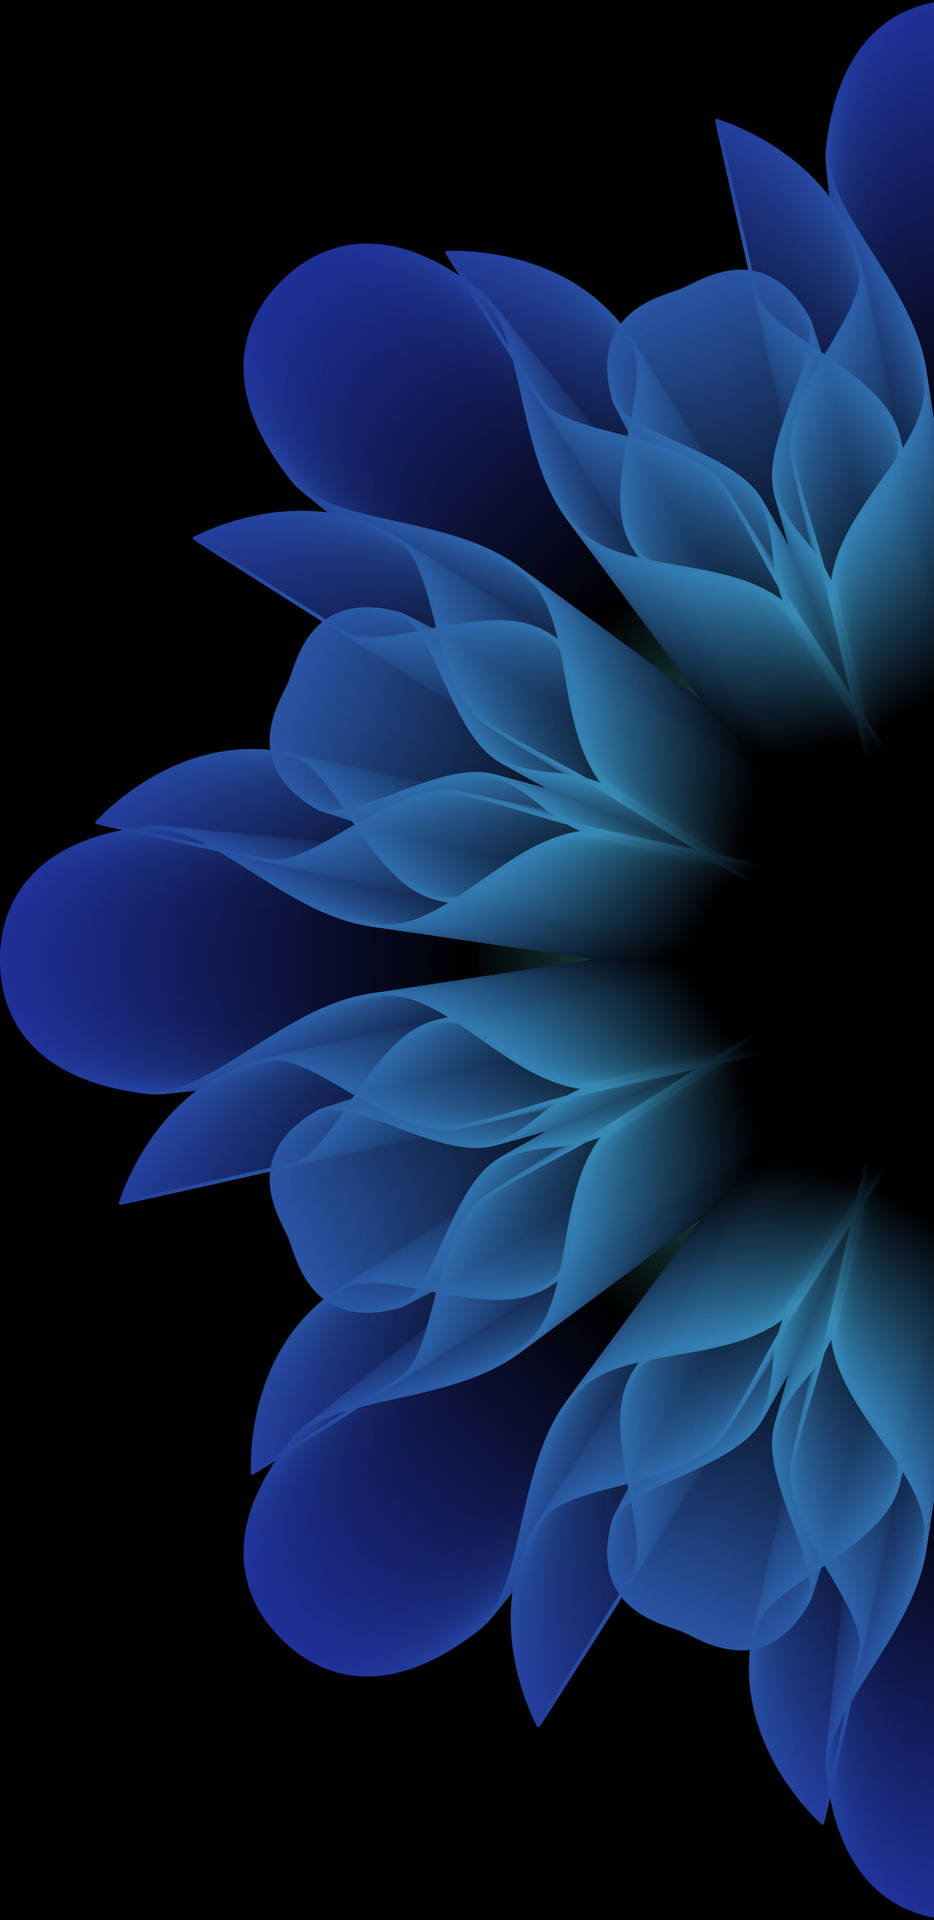 Blue Flower Mobile Digital Art